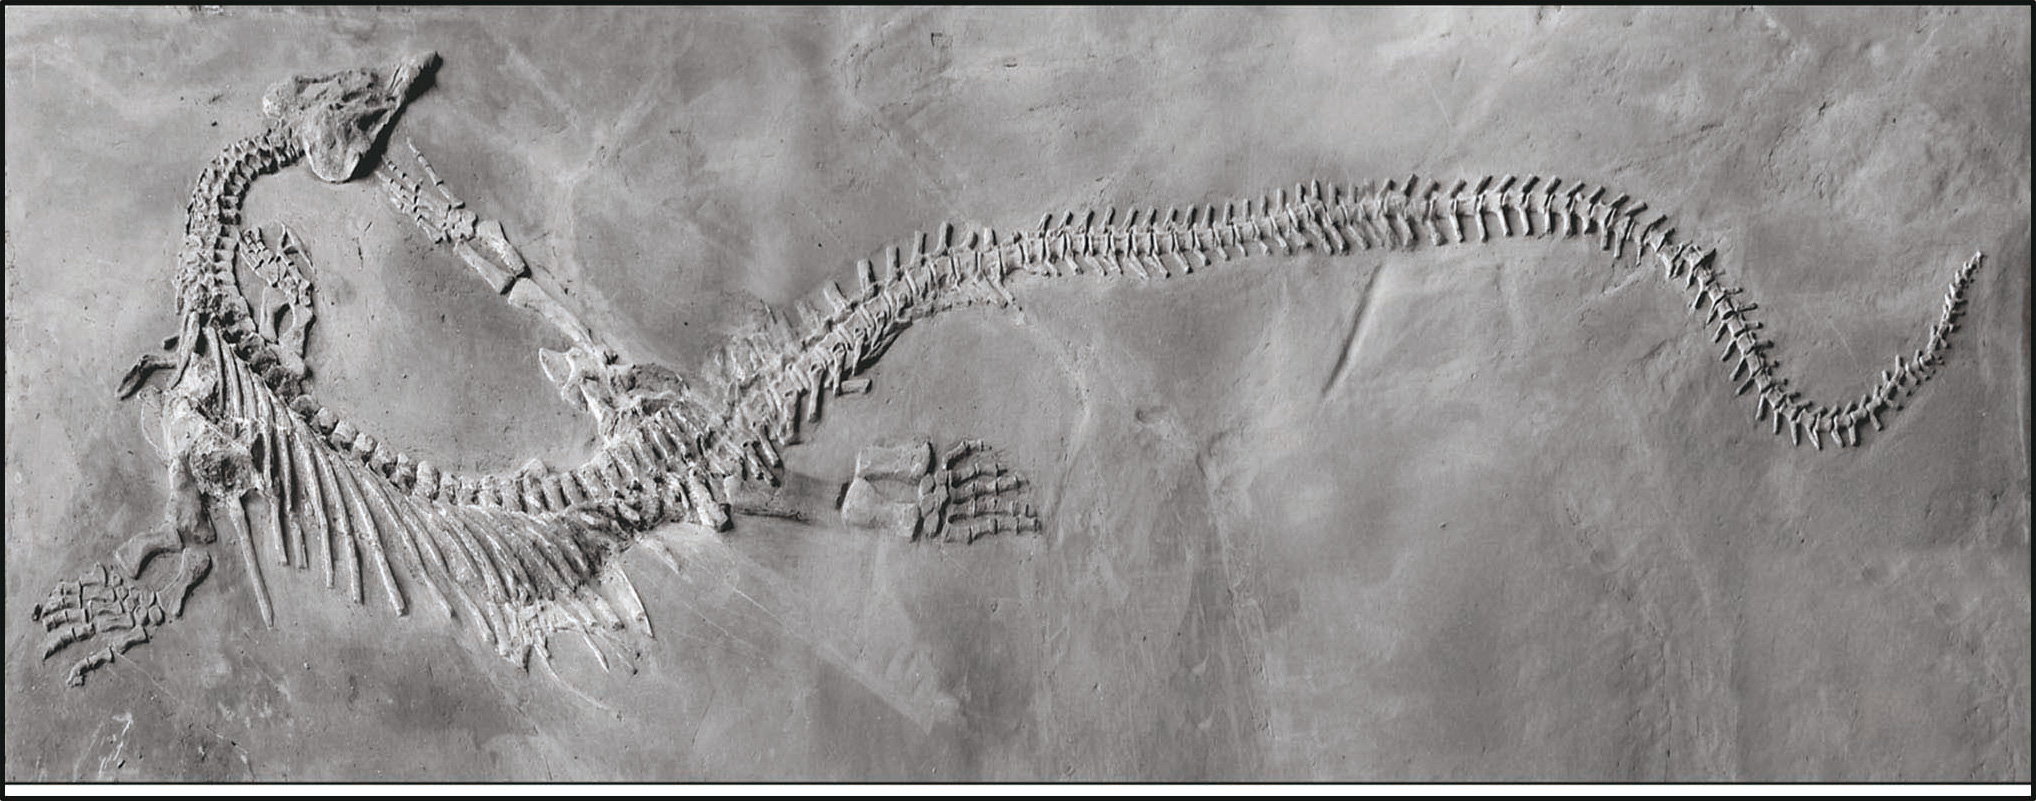 贵州古生物化石